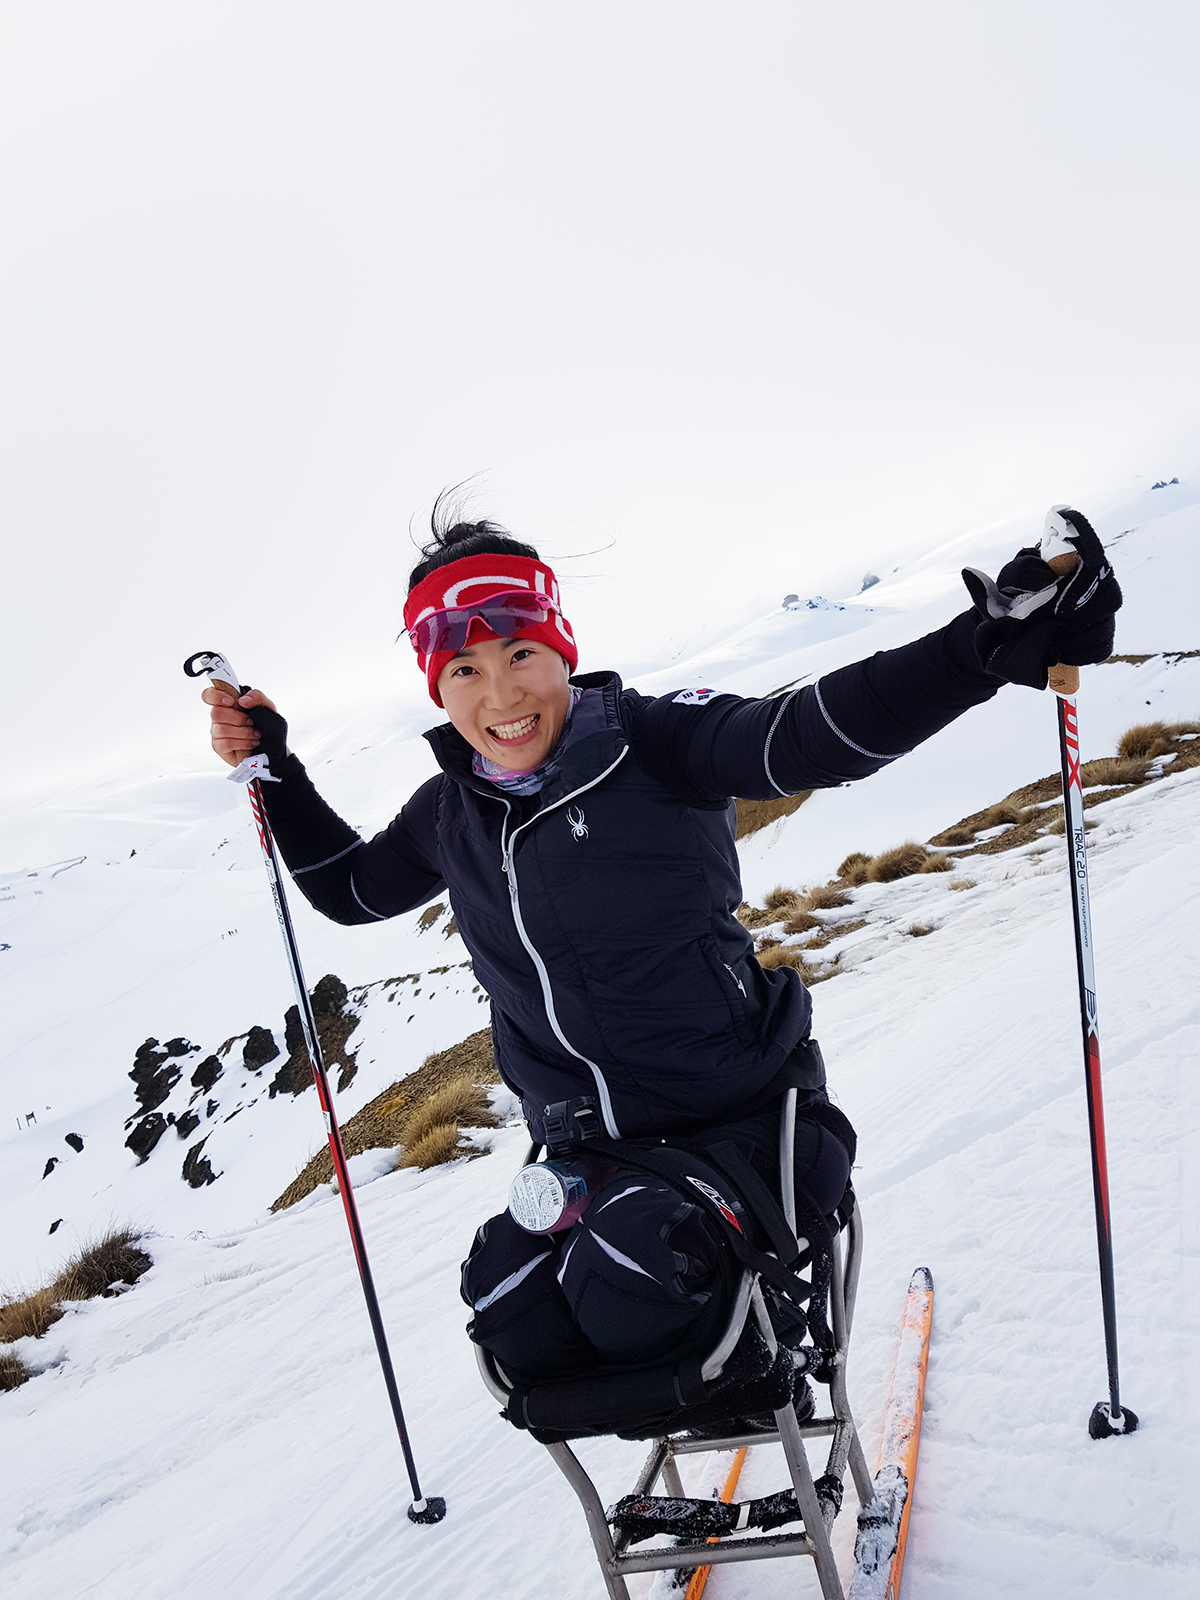  "눈밭을 자유롭게 다닐 수 있는 것이 장애인 크로스컨트리 스키의 매력이에요."